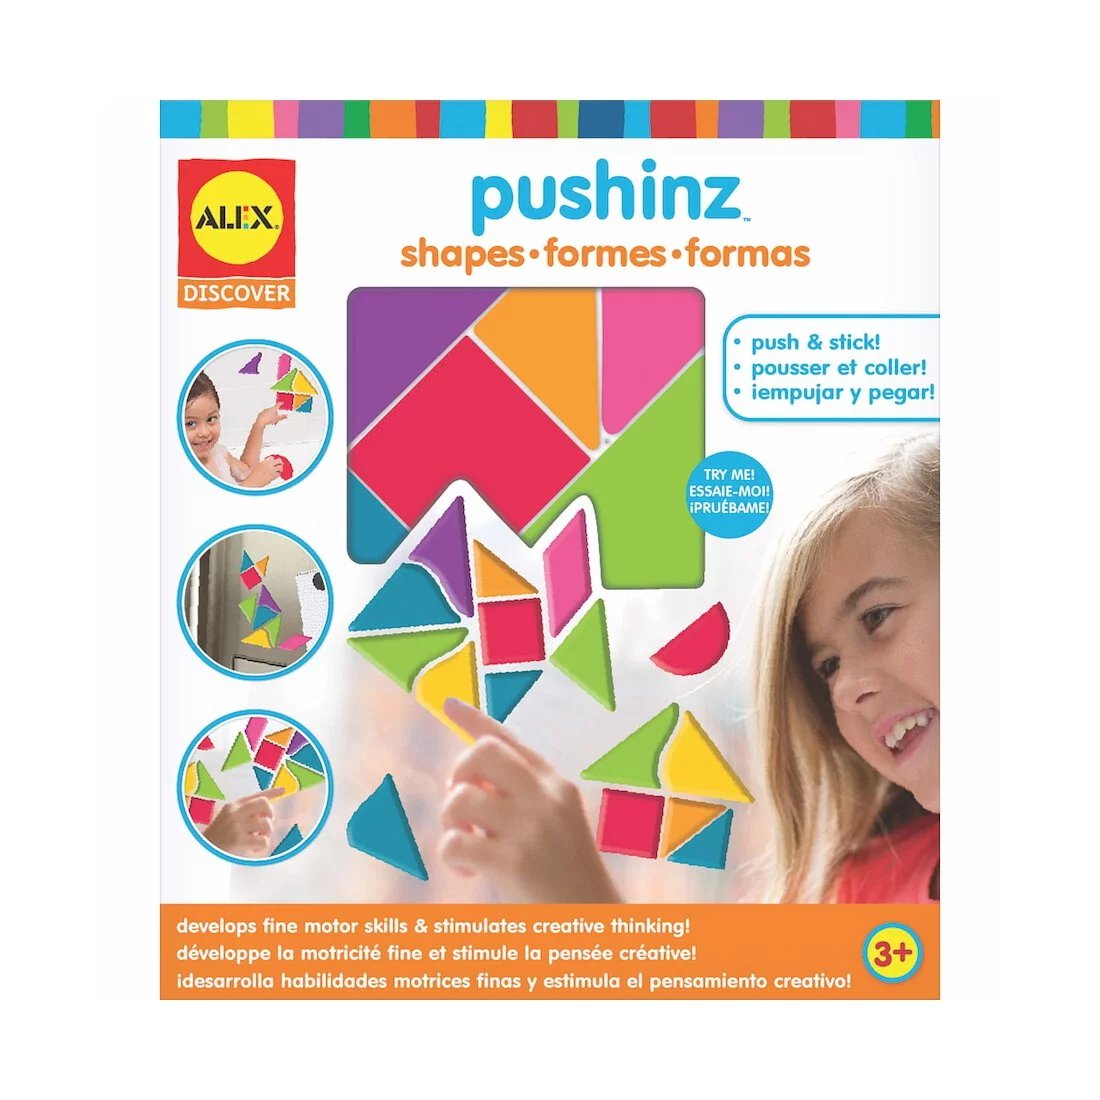 alex-brands-pushinz-shapes-1